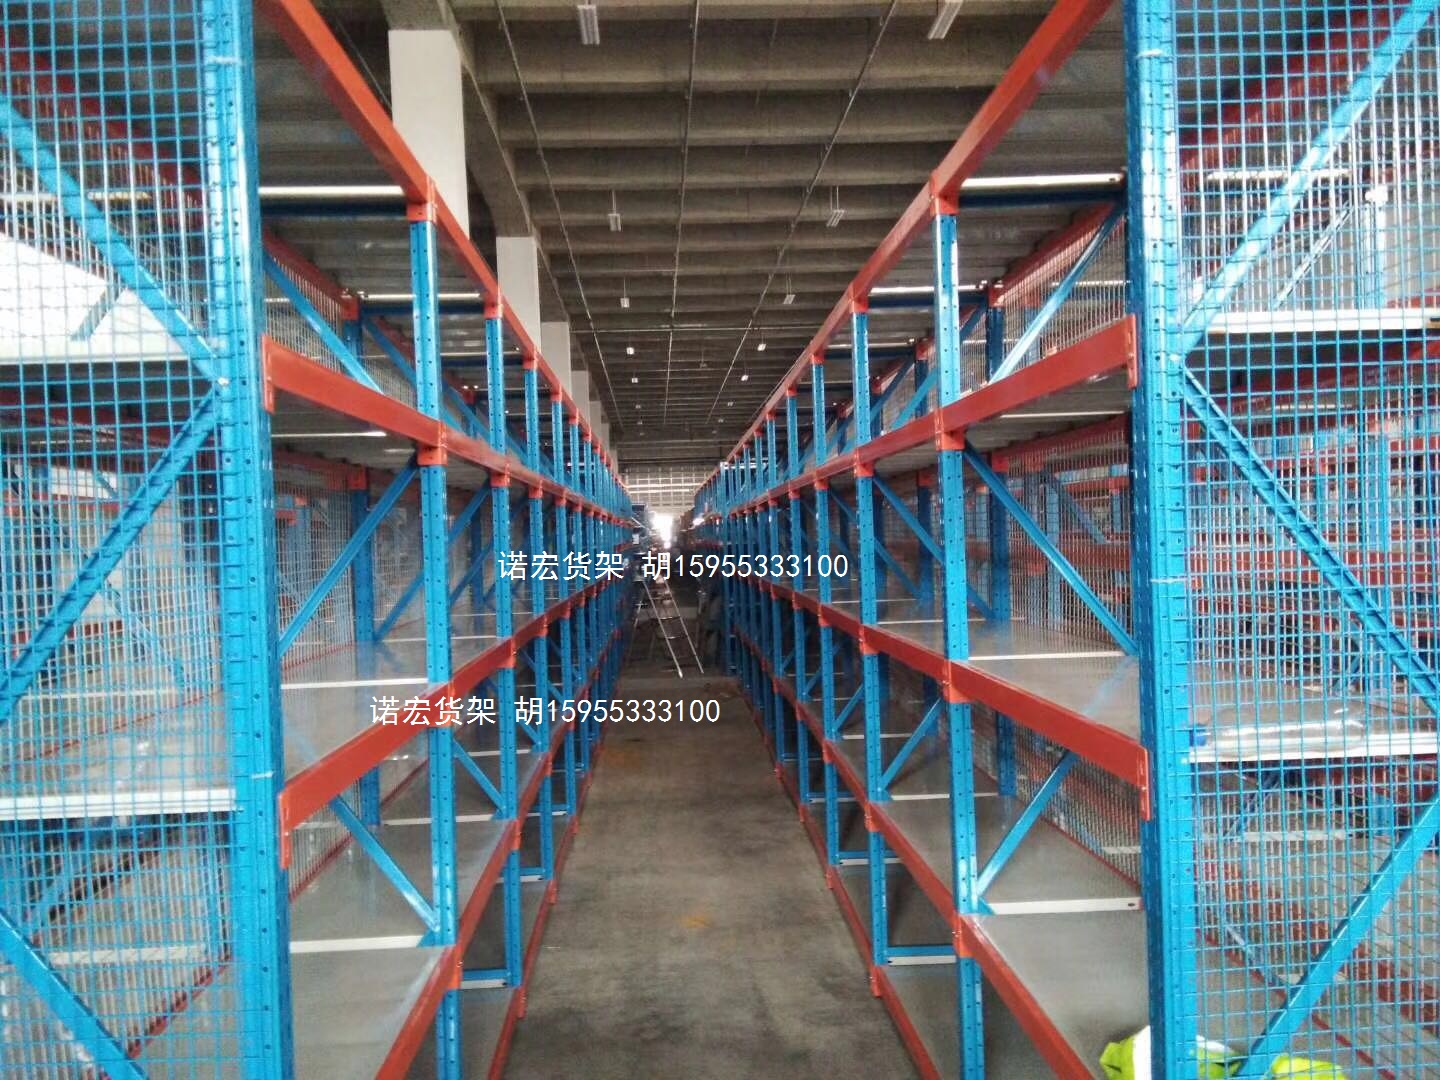 上海诺宏货架专业生产贯通货架类产品